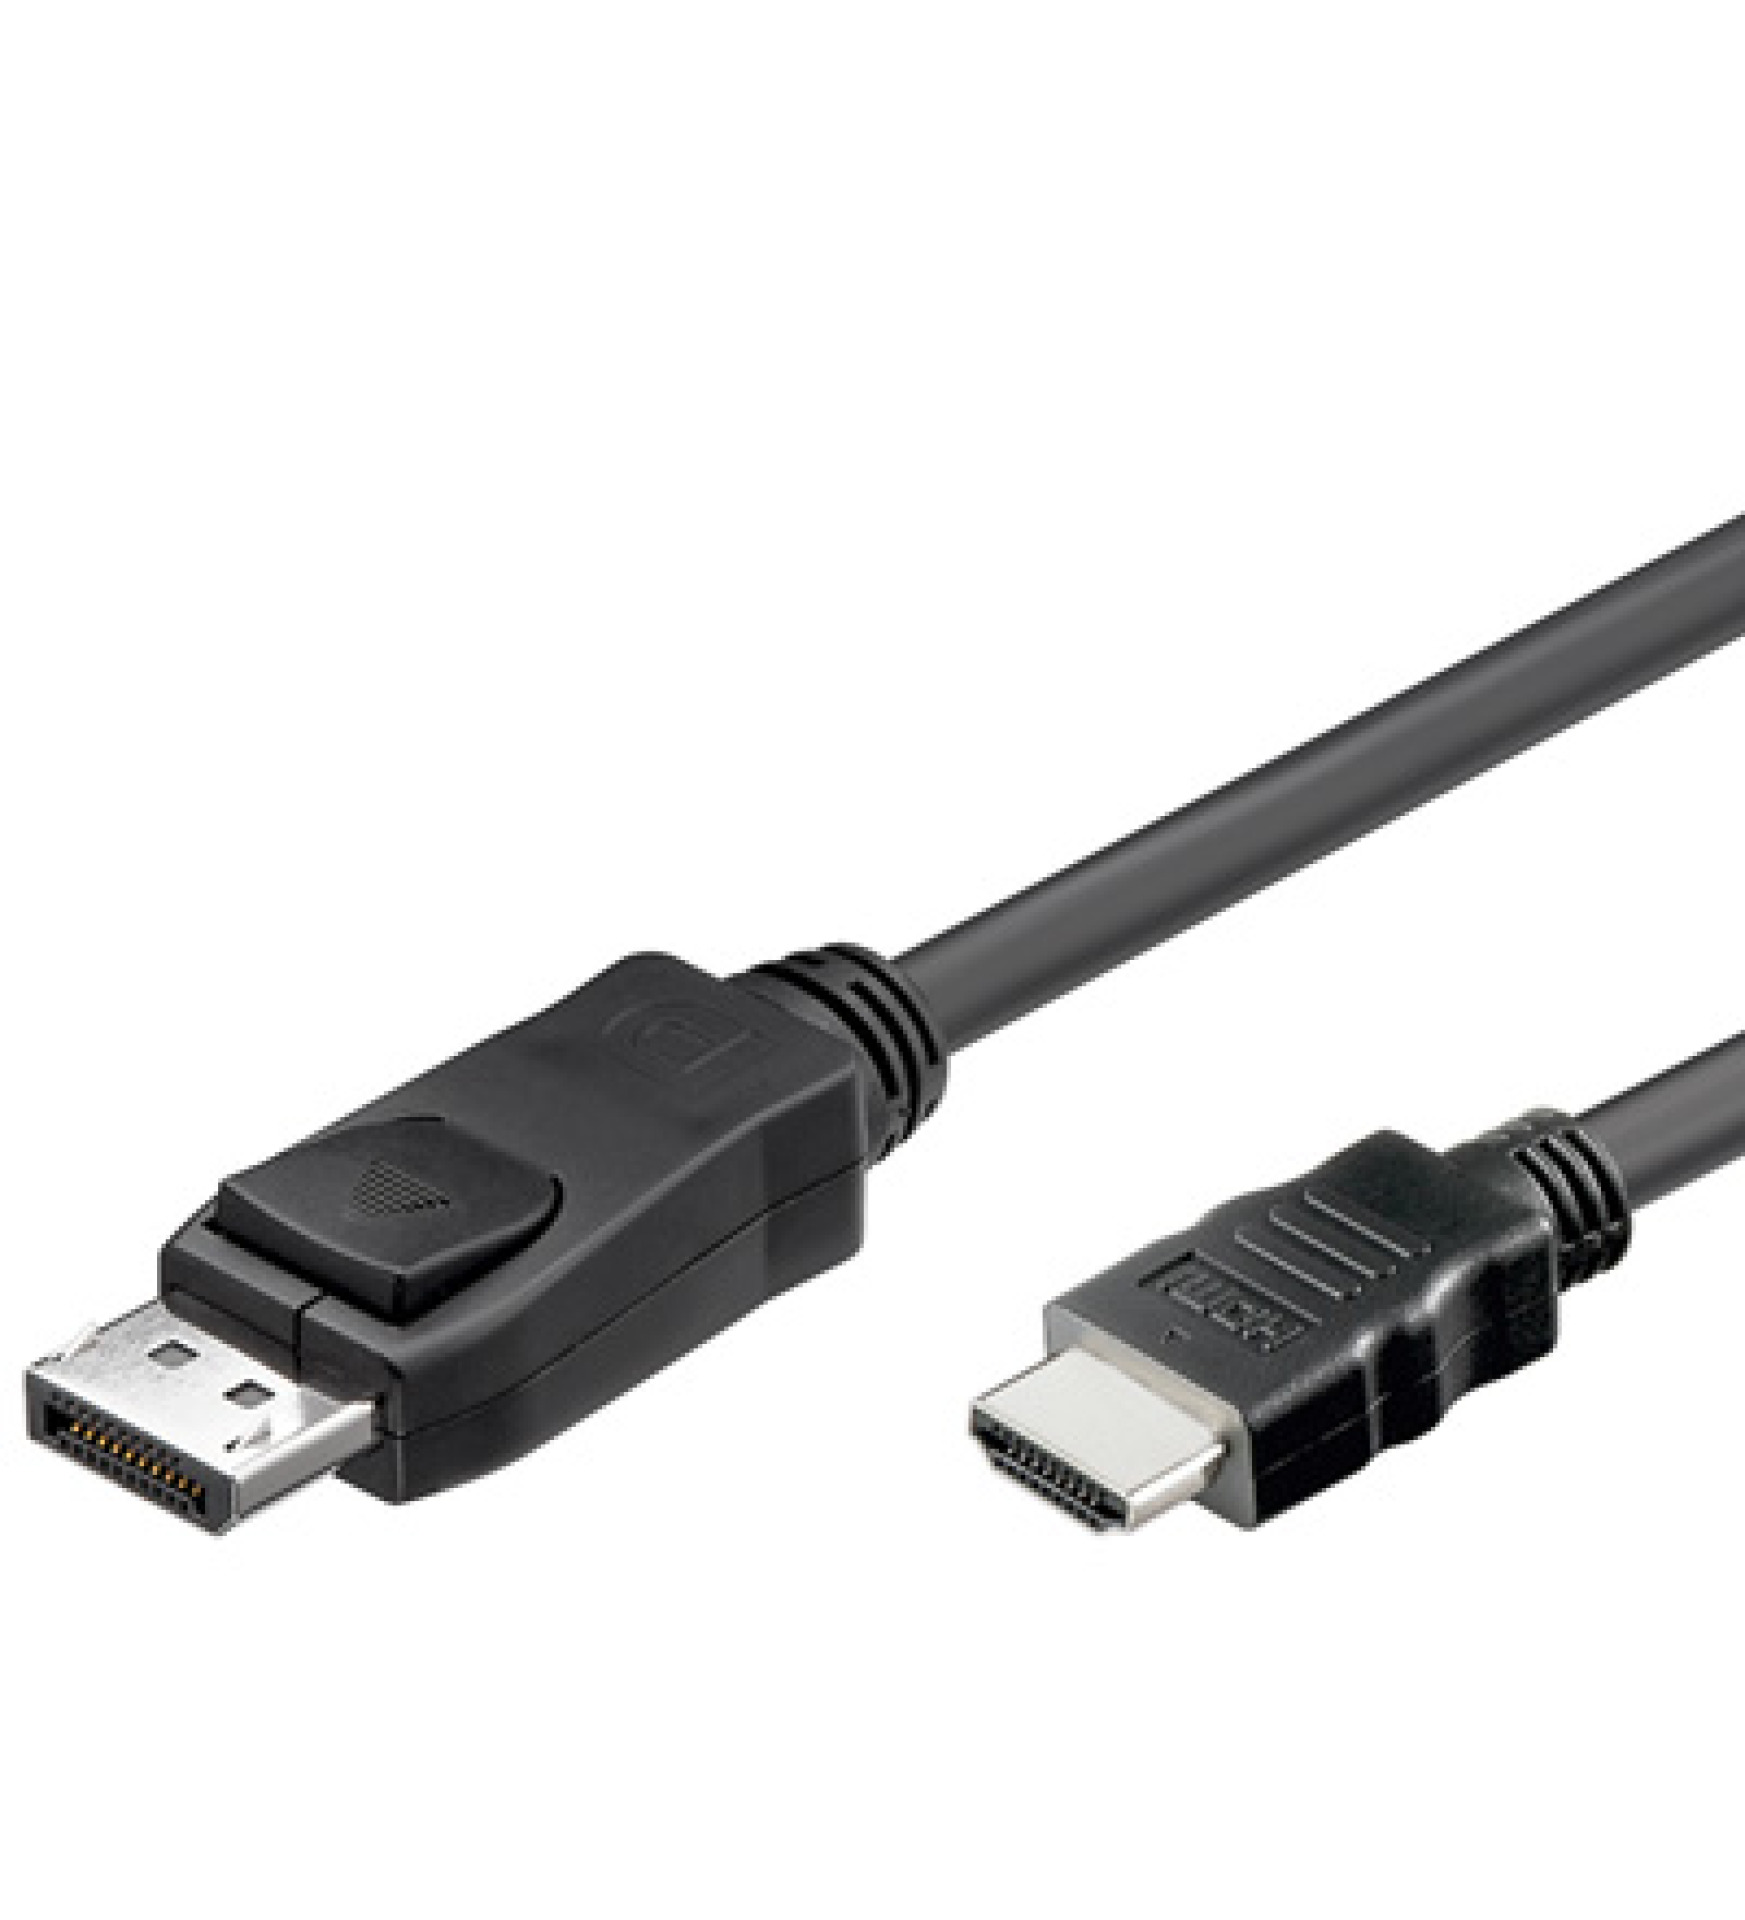 Konverterkabel DisplayPort 1.1 auf HDMI, schwarz, 2 m